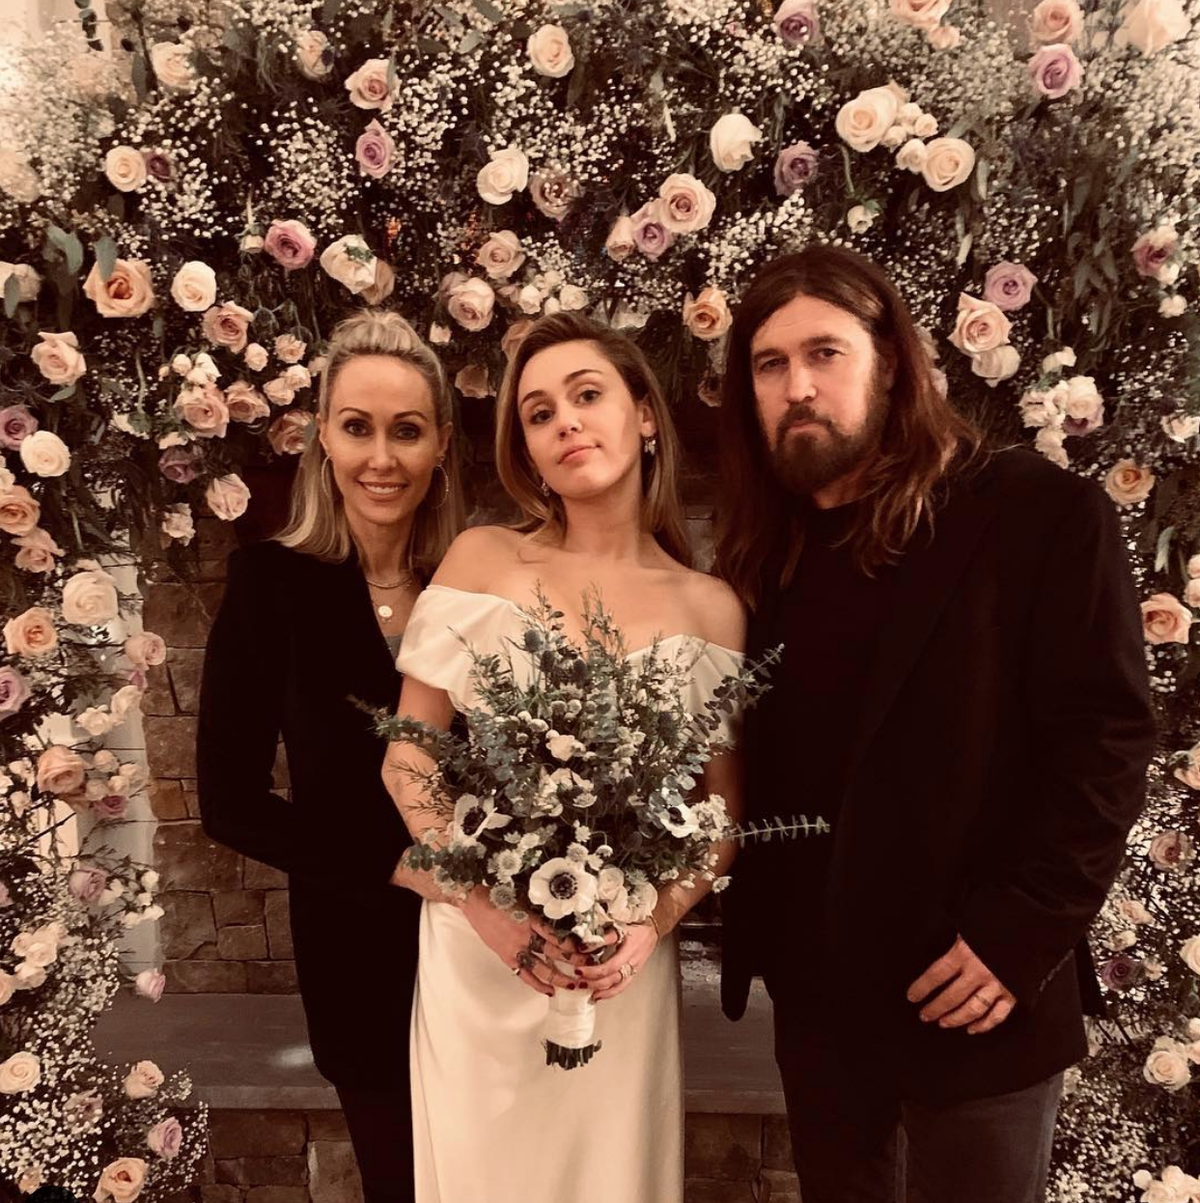 La foto de la boda de Miley Cyrus con sus padres - Los padres de Miley  Cyrus comparten la primera foto con su hija recién casada